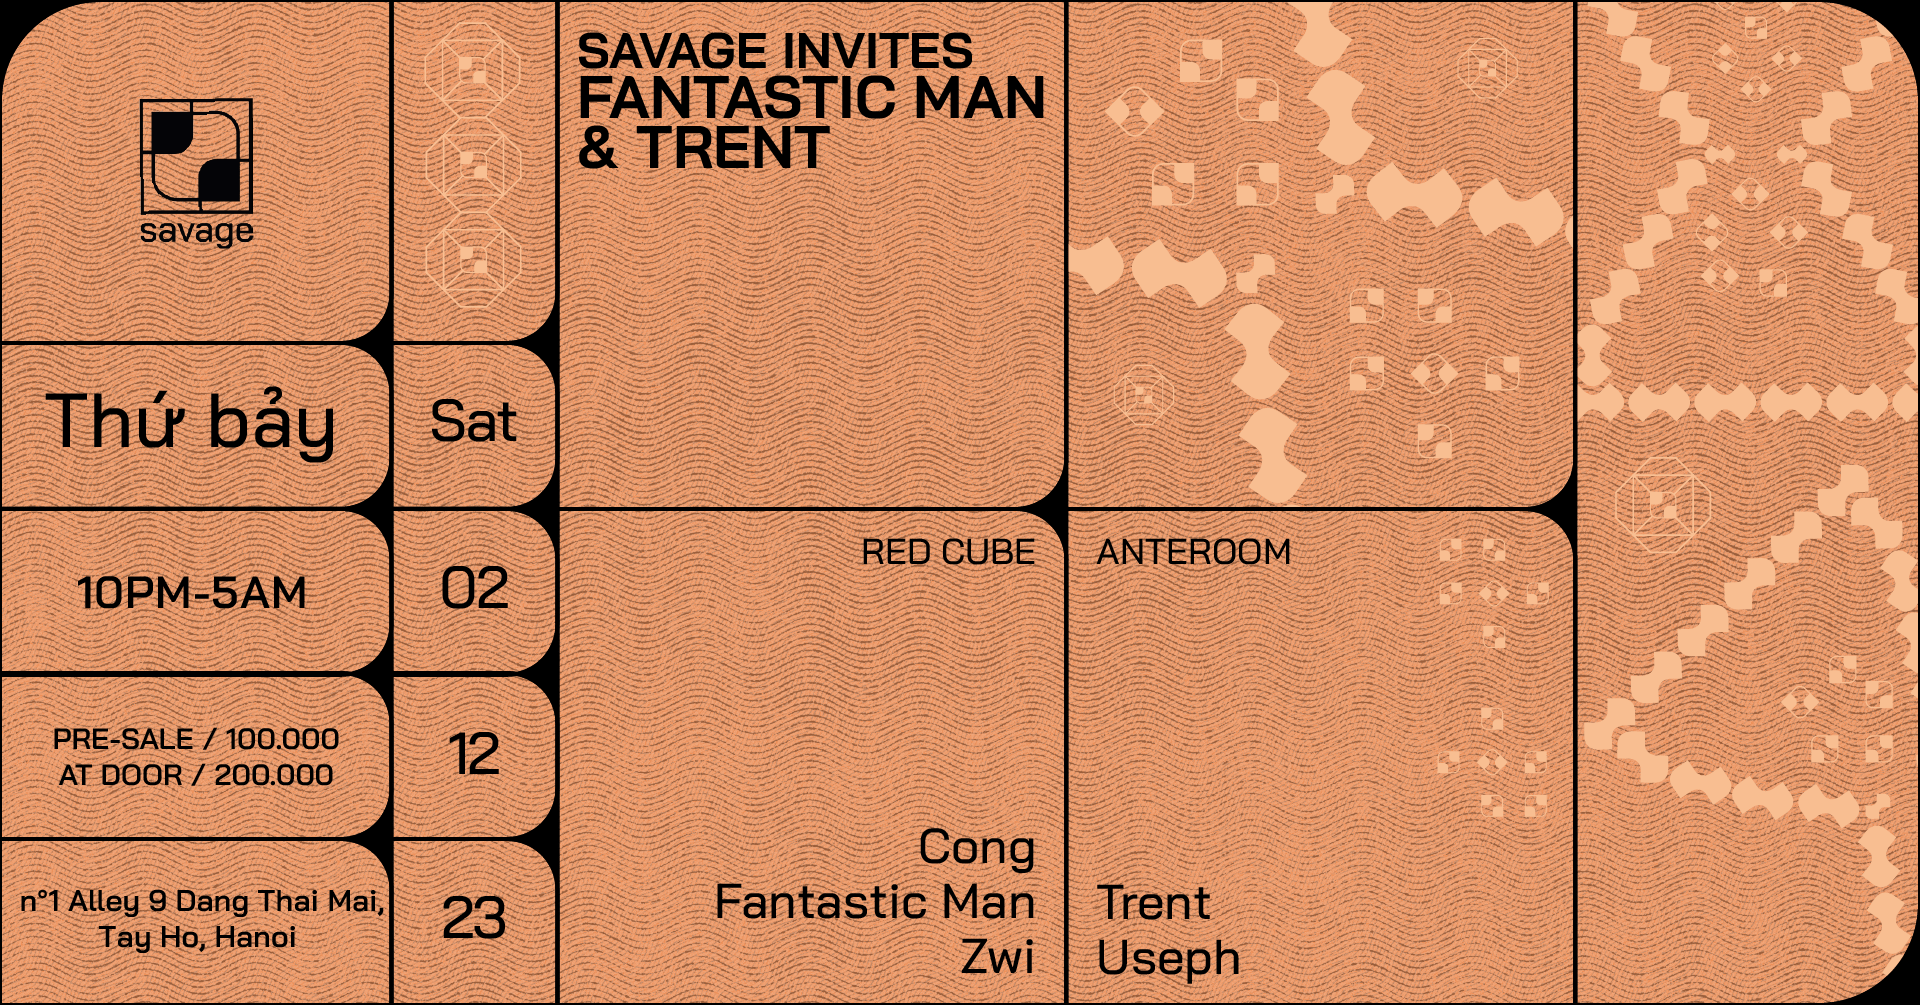 Savage Invites Fantastic Man & Trent - フライヤー裏